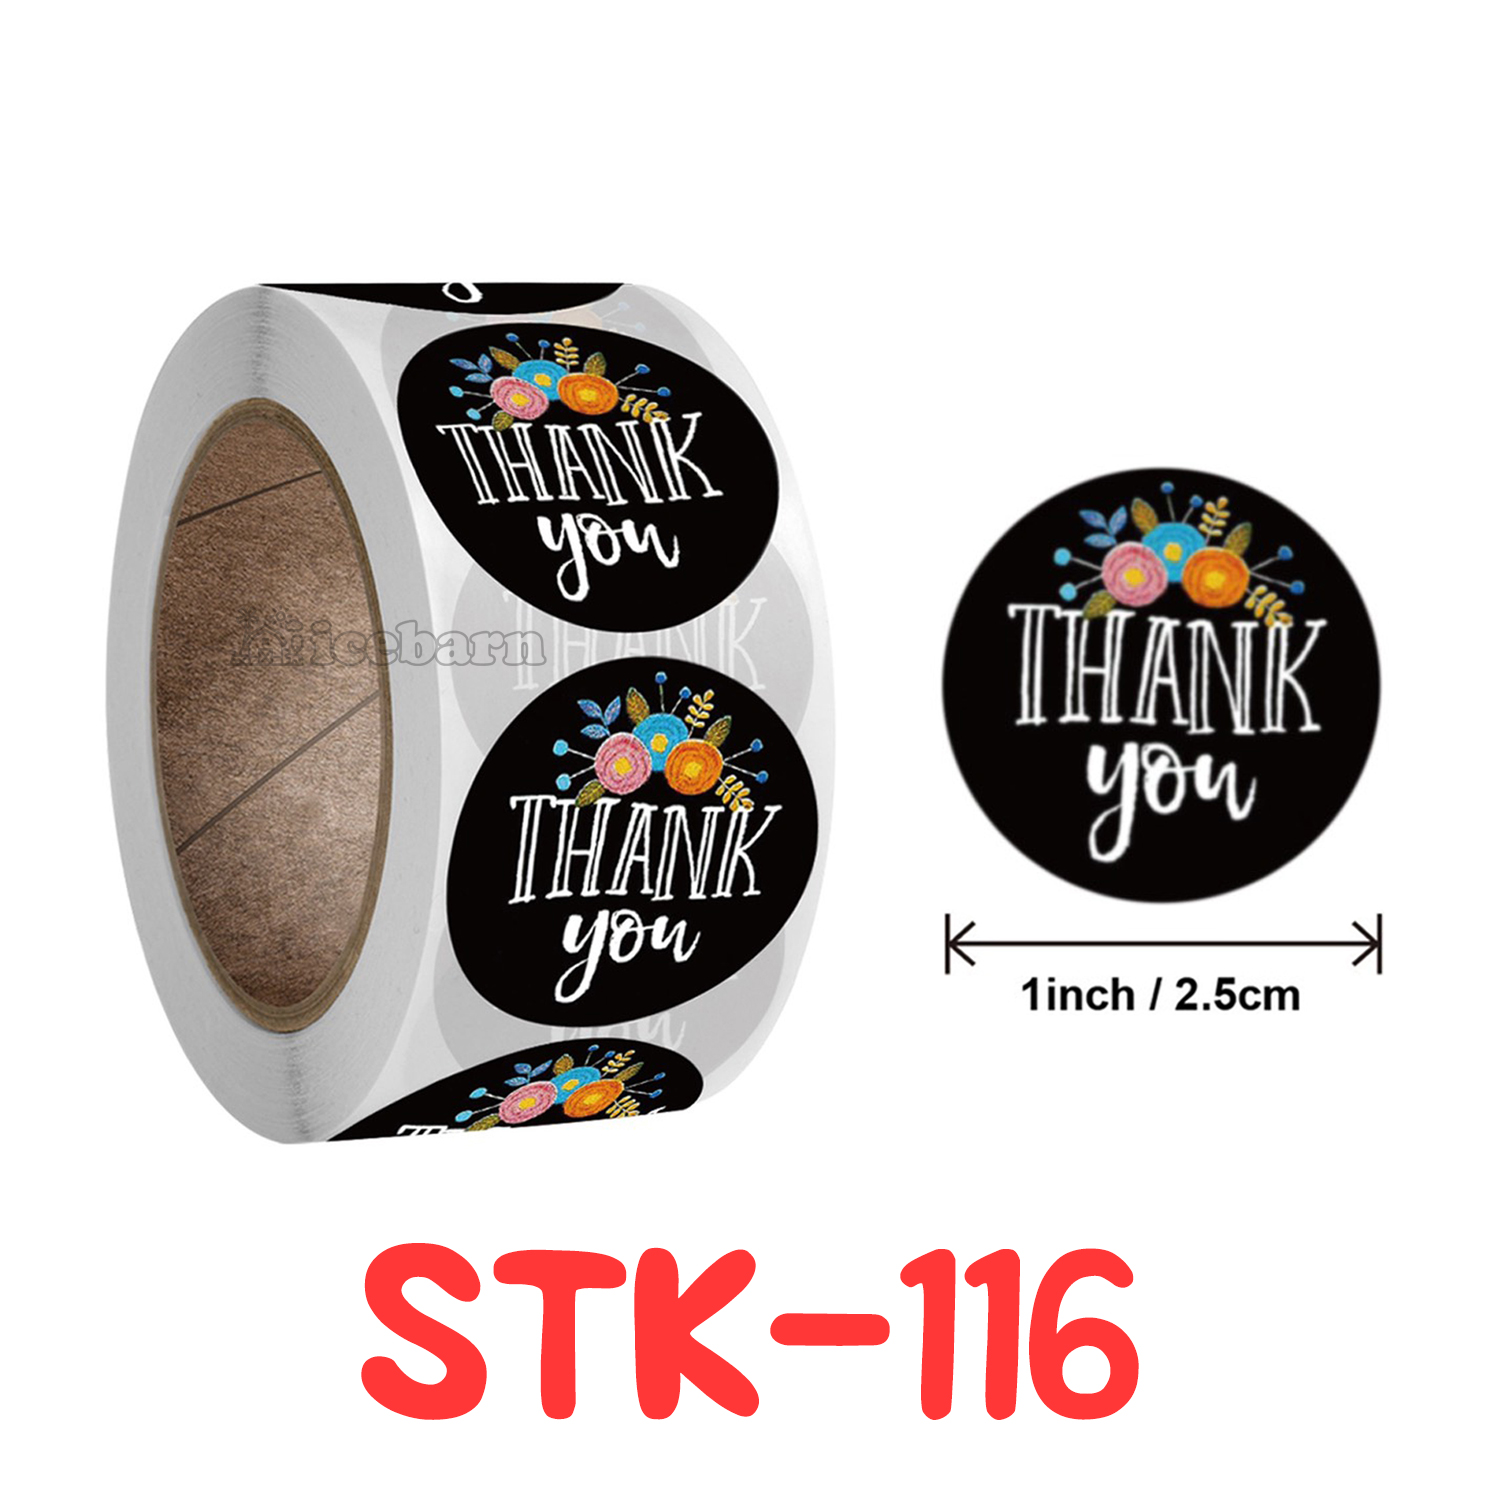 ม้วน 100 ดวง สติกเกอร์ขอบคุณ สติกเกอร์ ขอบคุณ แบบเยอะมาก! (STK-1) Various Pattern Thankyou Sticker Thank You Sticker (100 Pieces/Roll)